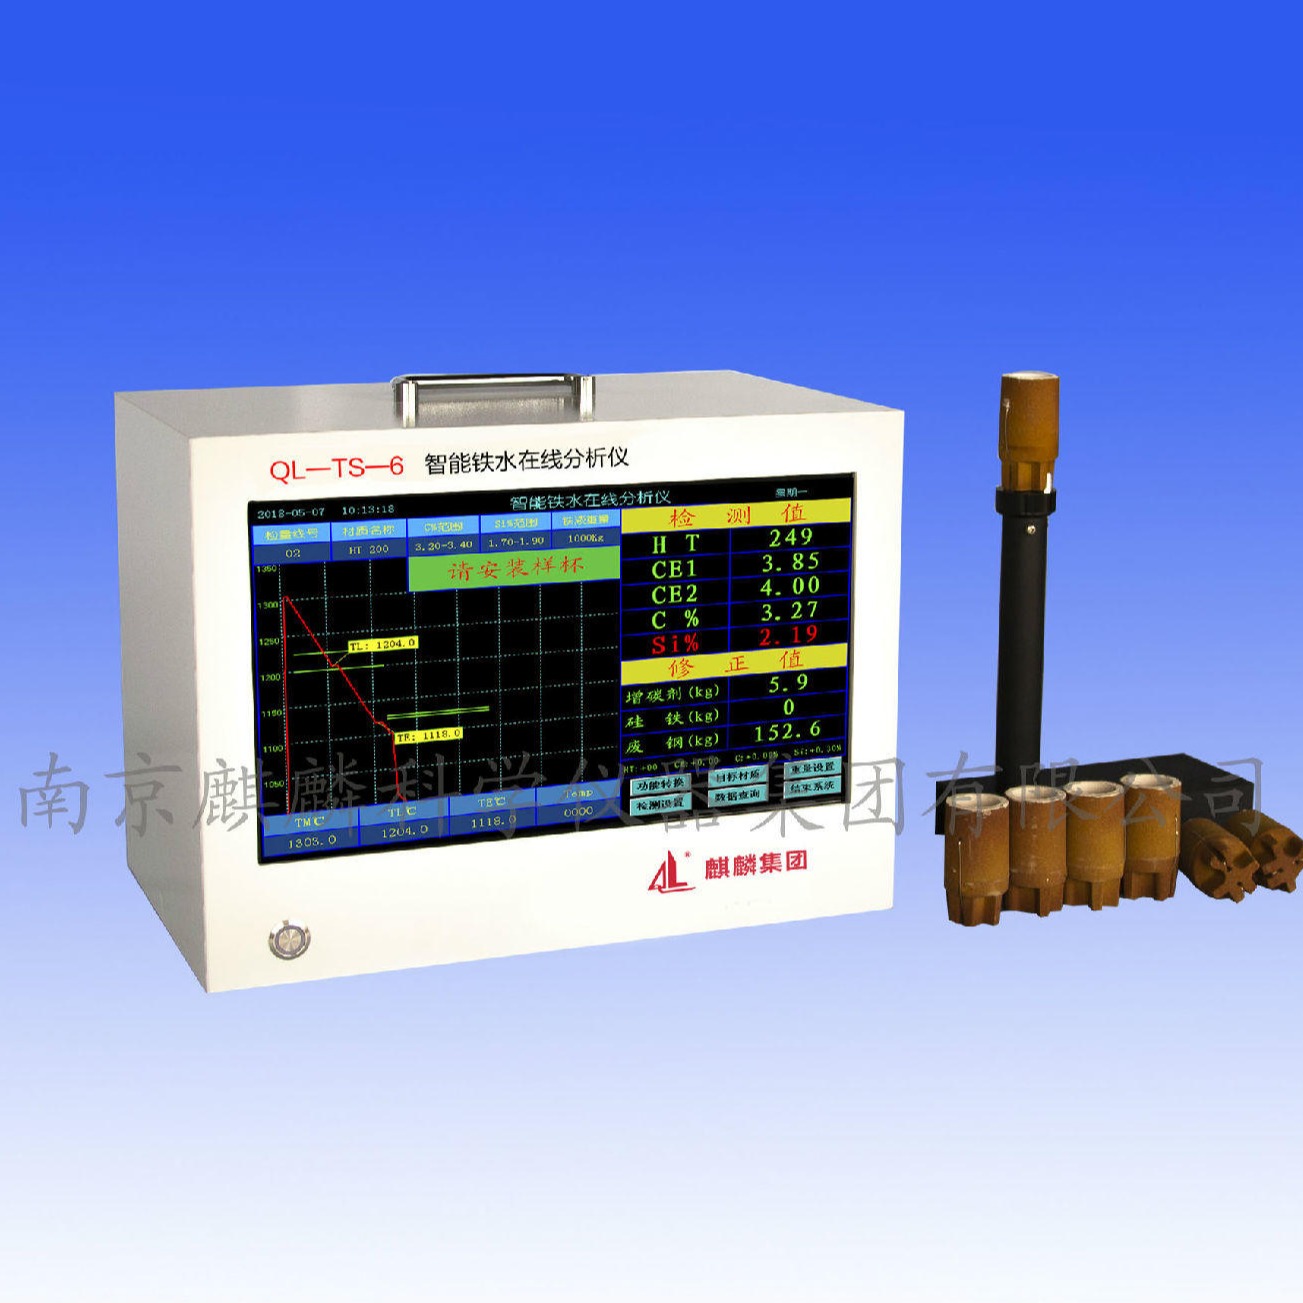 QL-TS-6型炉前分析仪  南京麒麟炉前碳硅仪